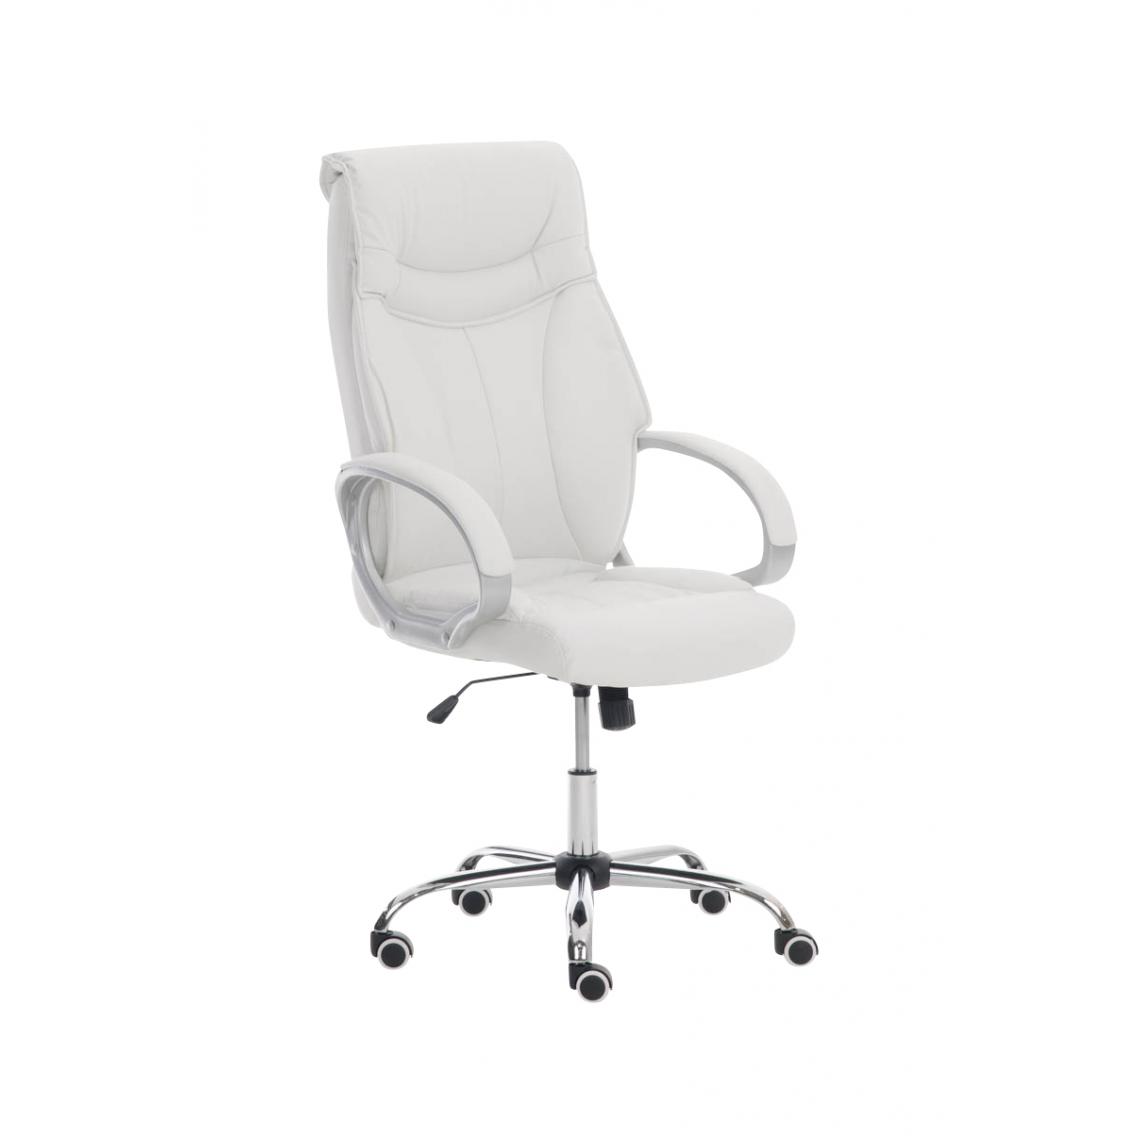 Icaverne - Splendide Chaise de bureau famille Manama couleur blanc - Chaises